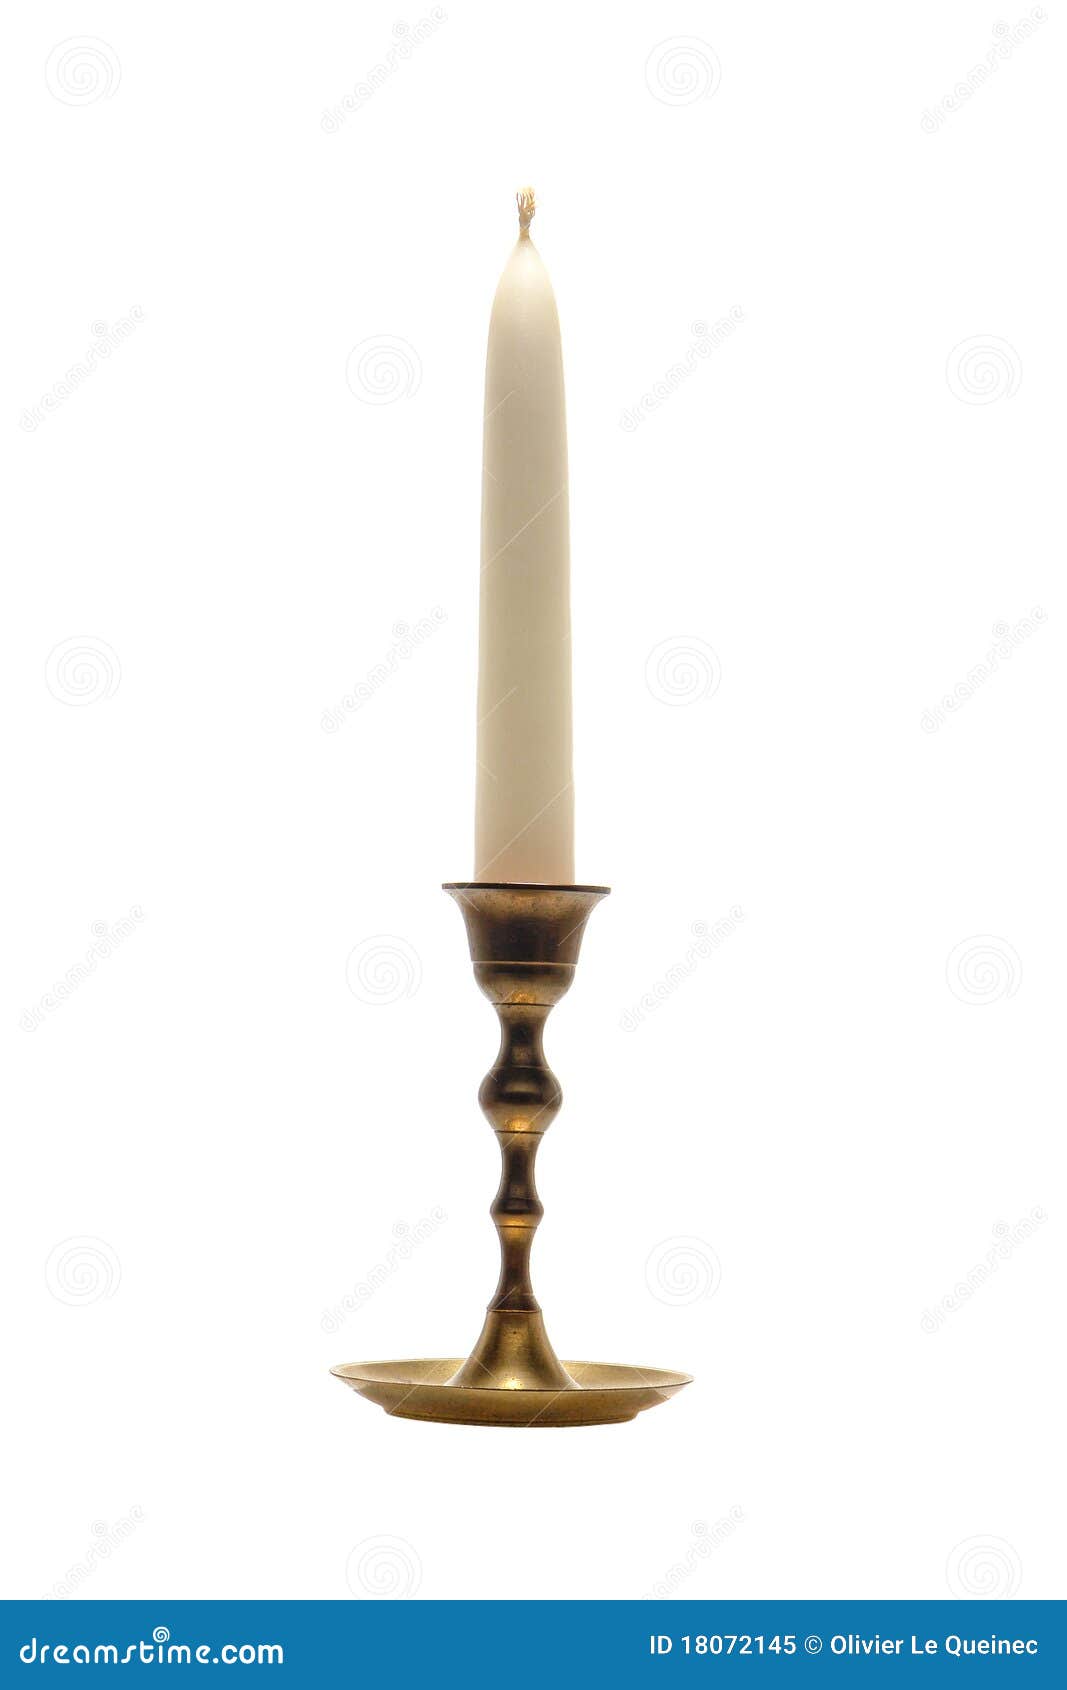 Voorkeur brandwond Authenticatie De Antieke Kaarsenhouder Van De Kandelaar Van Het Messing Stock Afbeelding  - Image of licht, metaal: 18072145